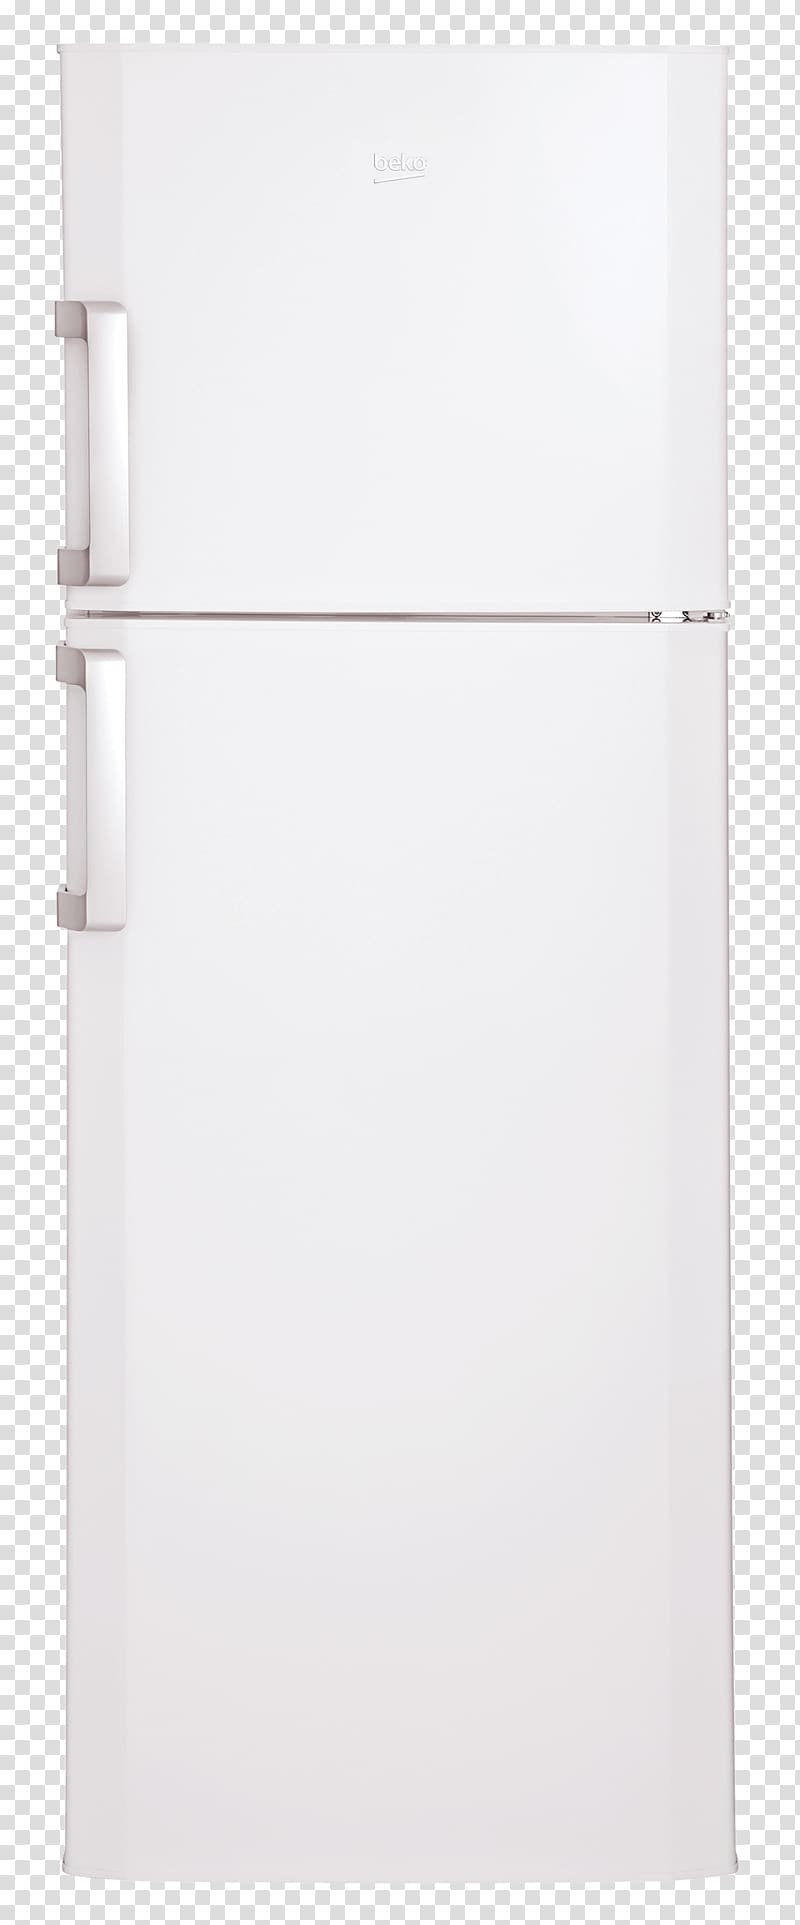 Plastic bag File Folders Door Lock, Double Door Refrigerator transparent background PNG clipart